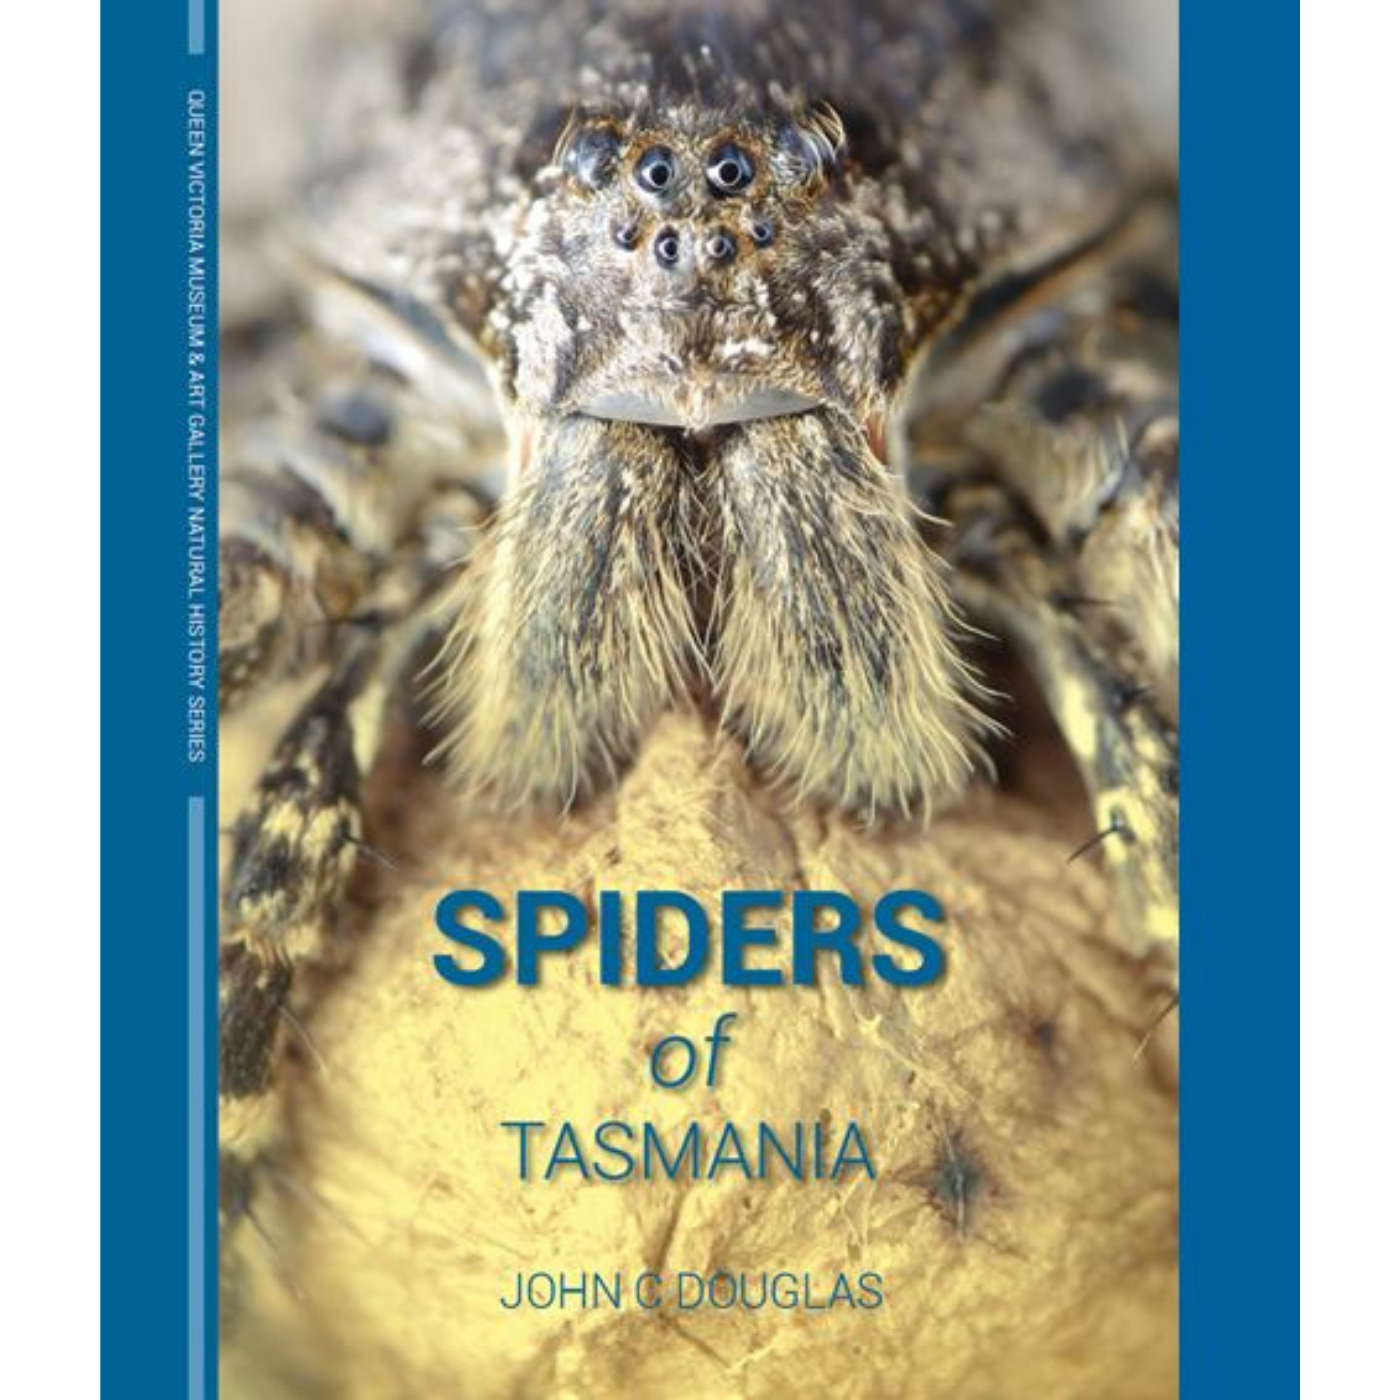 Spiders of Tasmania